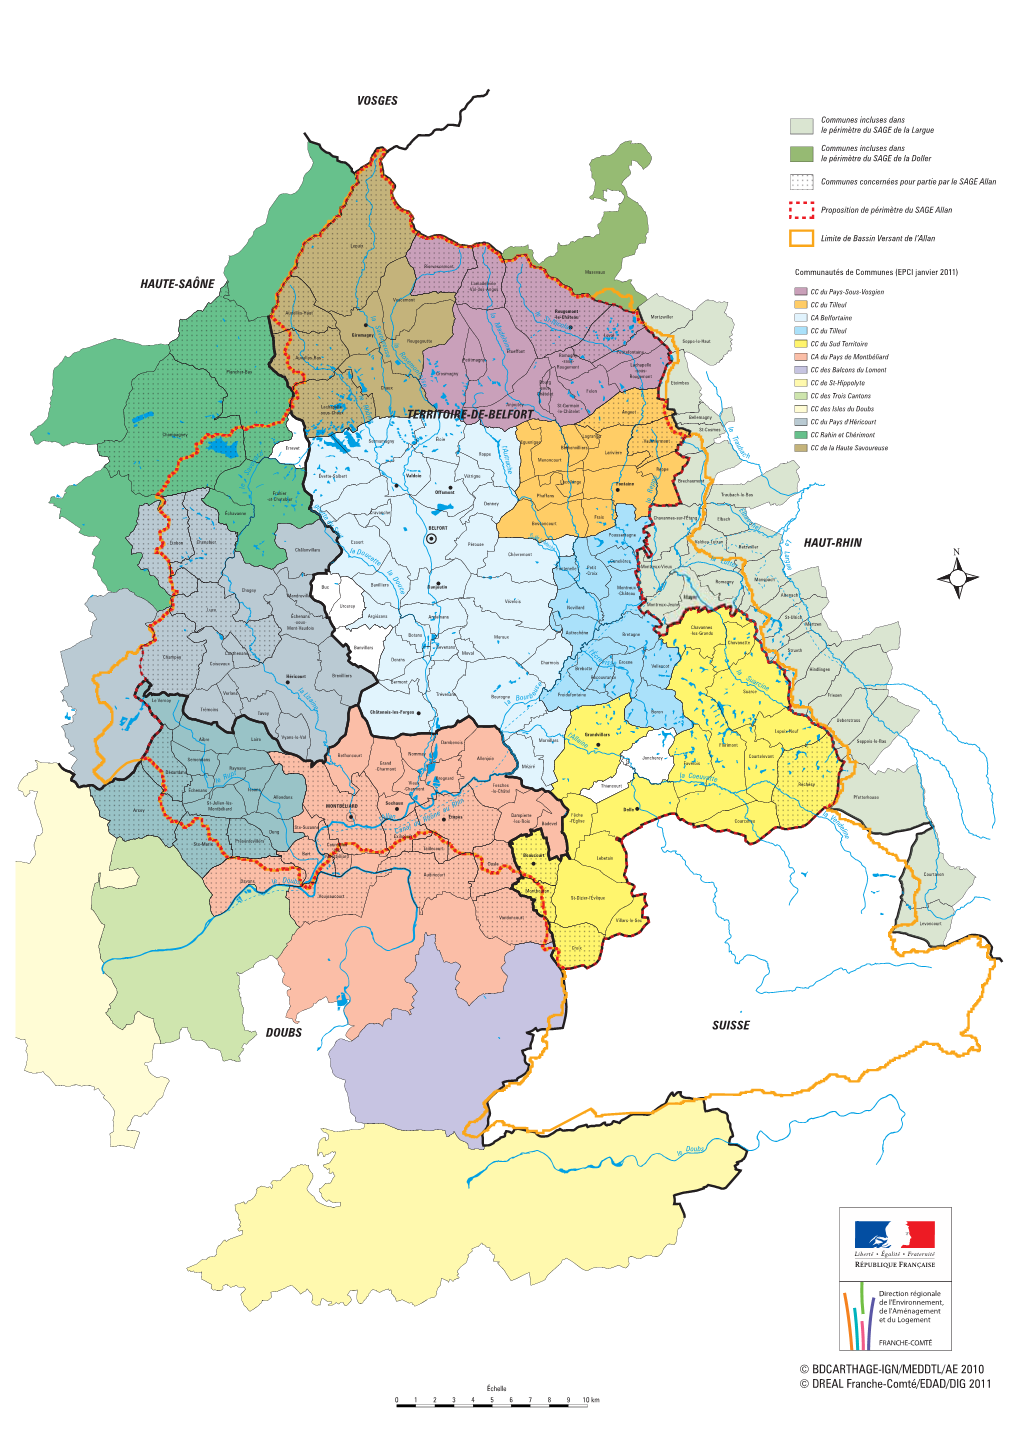 Haut-Rhin Vosges Haute-Saône Doubs Suisse